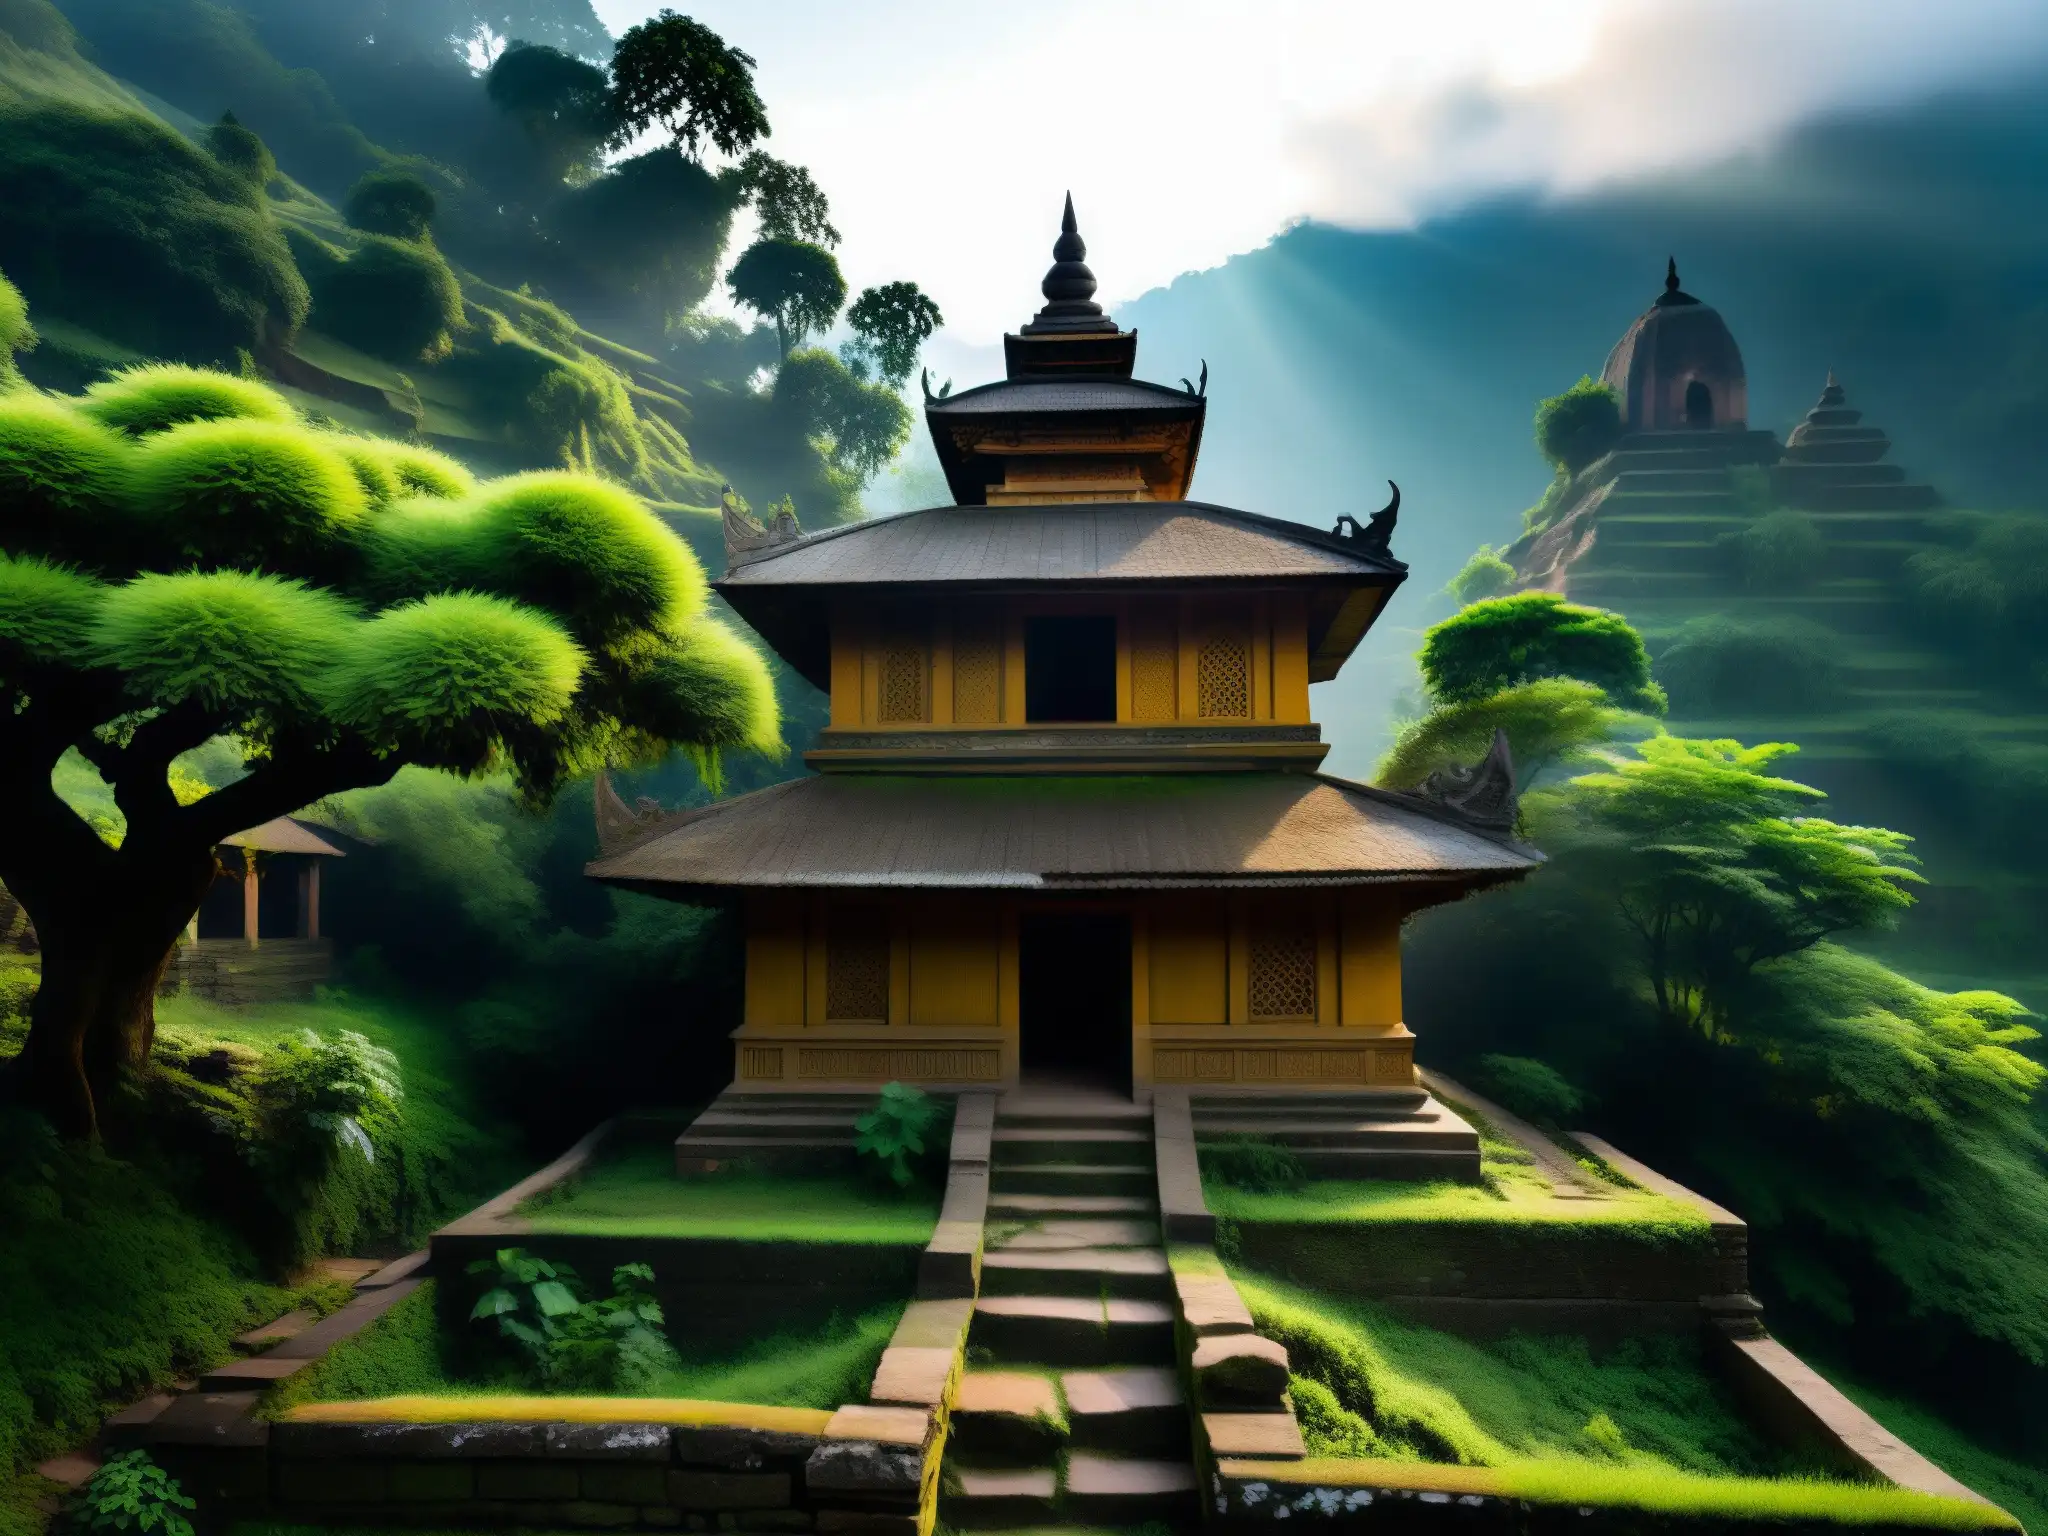 Templo abandonado en las neblinosas colinas de Nepal, con una atmósfera de misterio y antigüedad